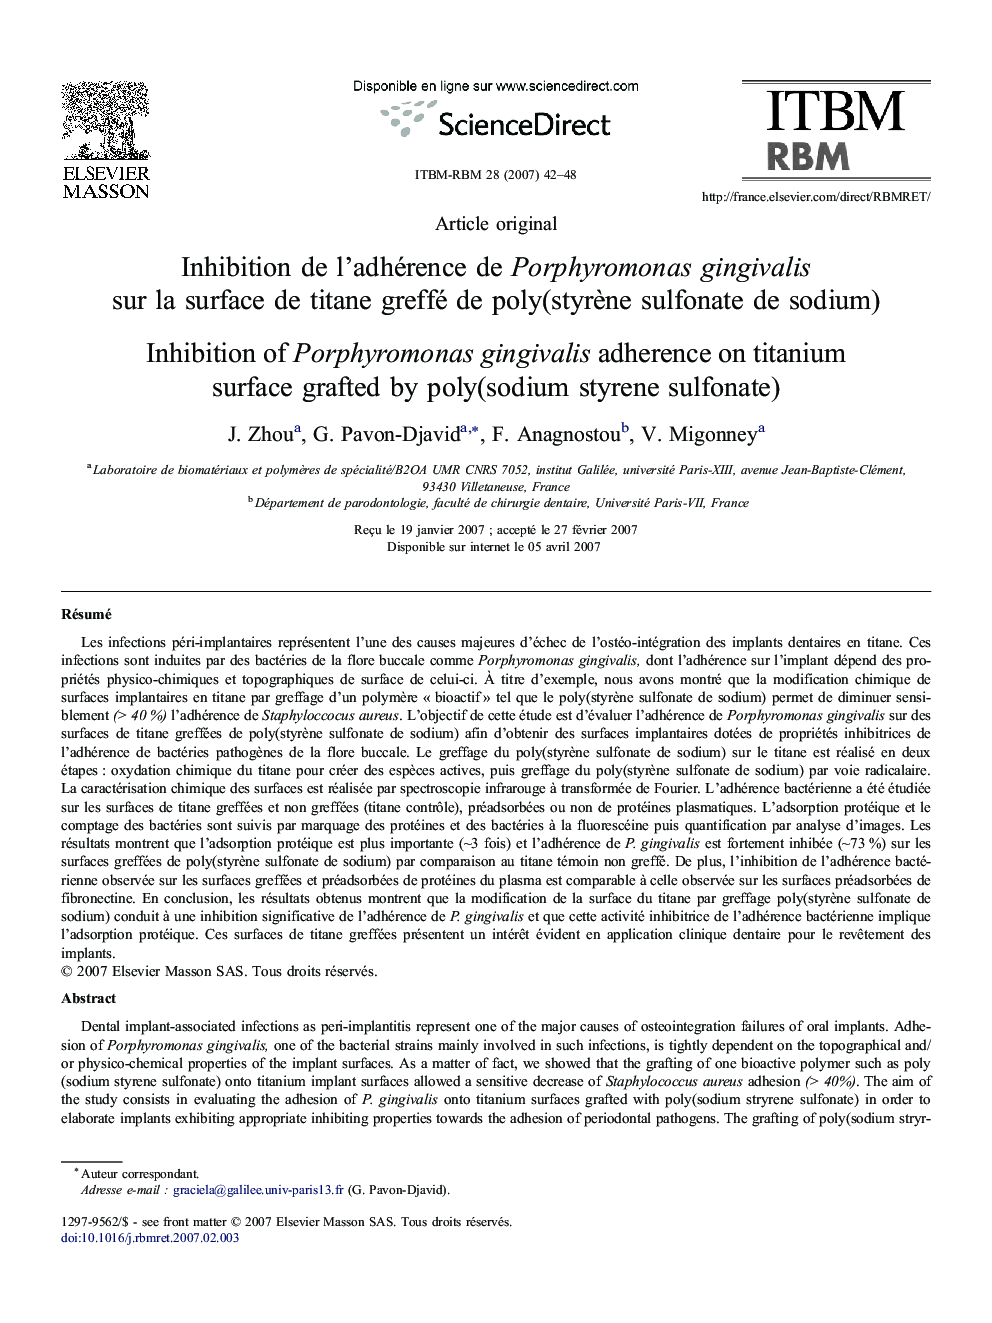 Inhibition de l'adhérence de Porphyromonas gingivalis sur la surface de titane greffé de poly(styrène sulfonate de sodium)